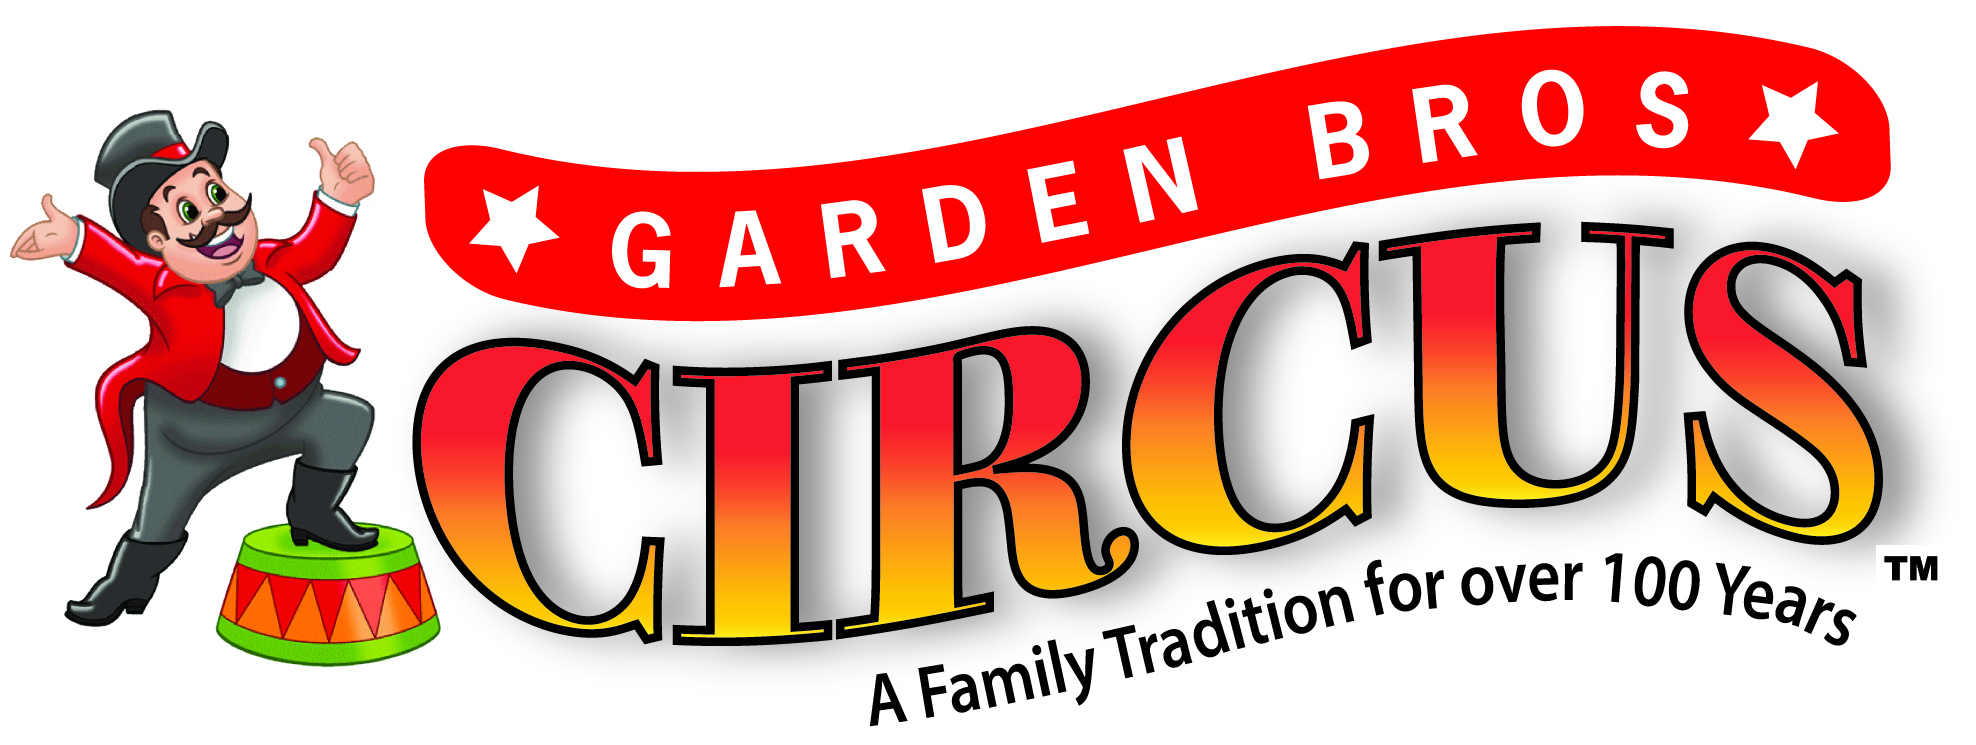 Garden Bros Circus, Bexar, Texas, United States